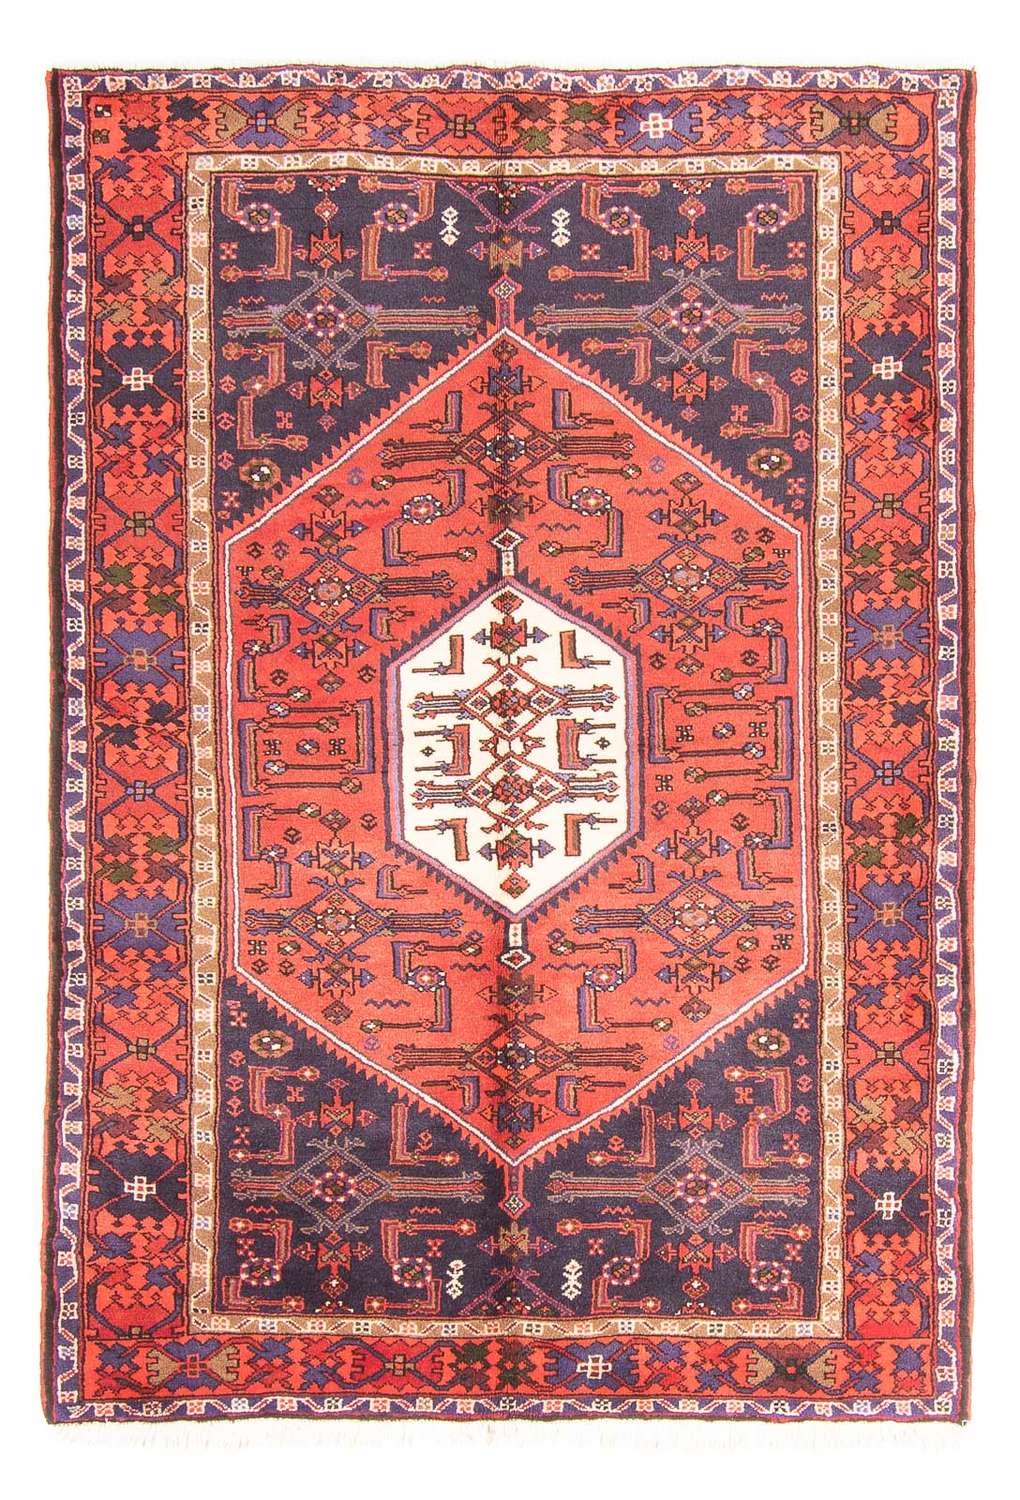 Alfombra persa - Nómada - 194 x 131 cm - rojo